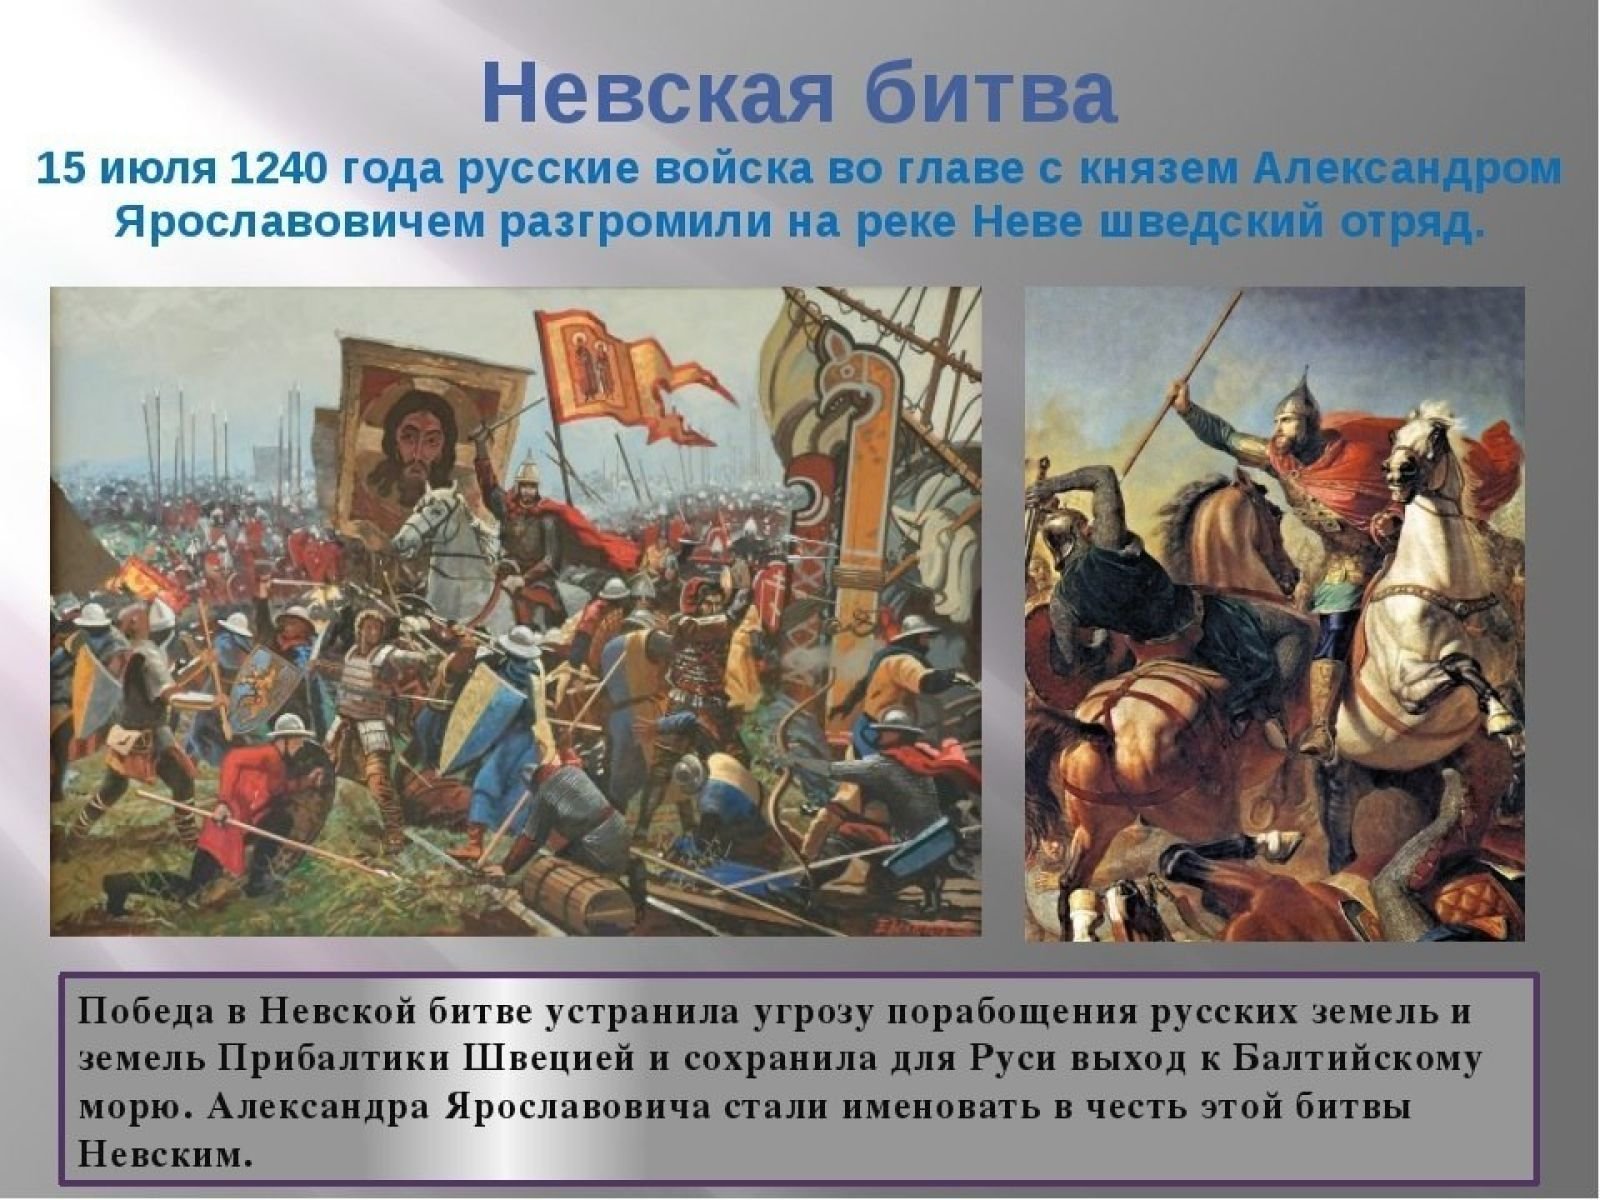 Захватчики невской битвы. 15 Июля 1240 г. русские войска разбили Шведов в Невской битве. 15 Июля 1240 года состоялась Невская битва..